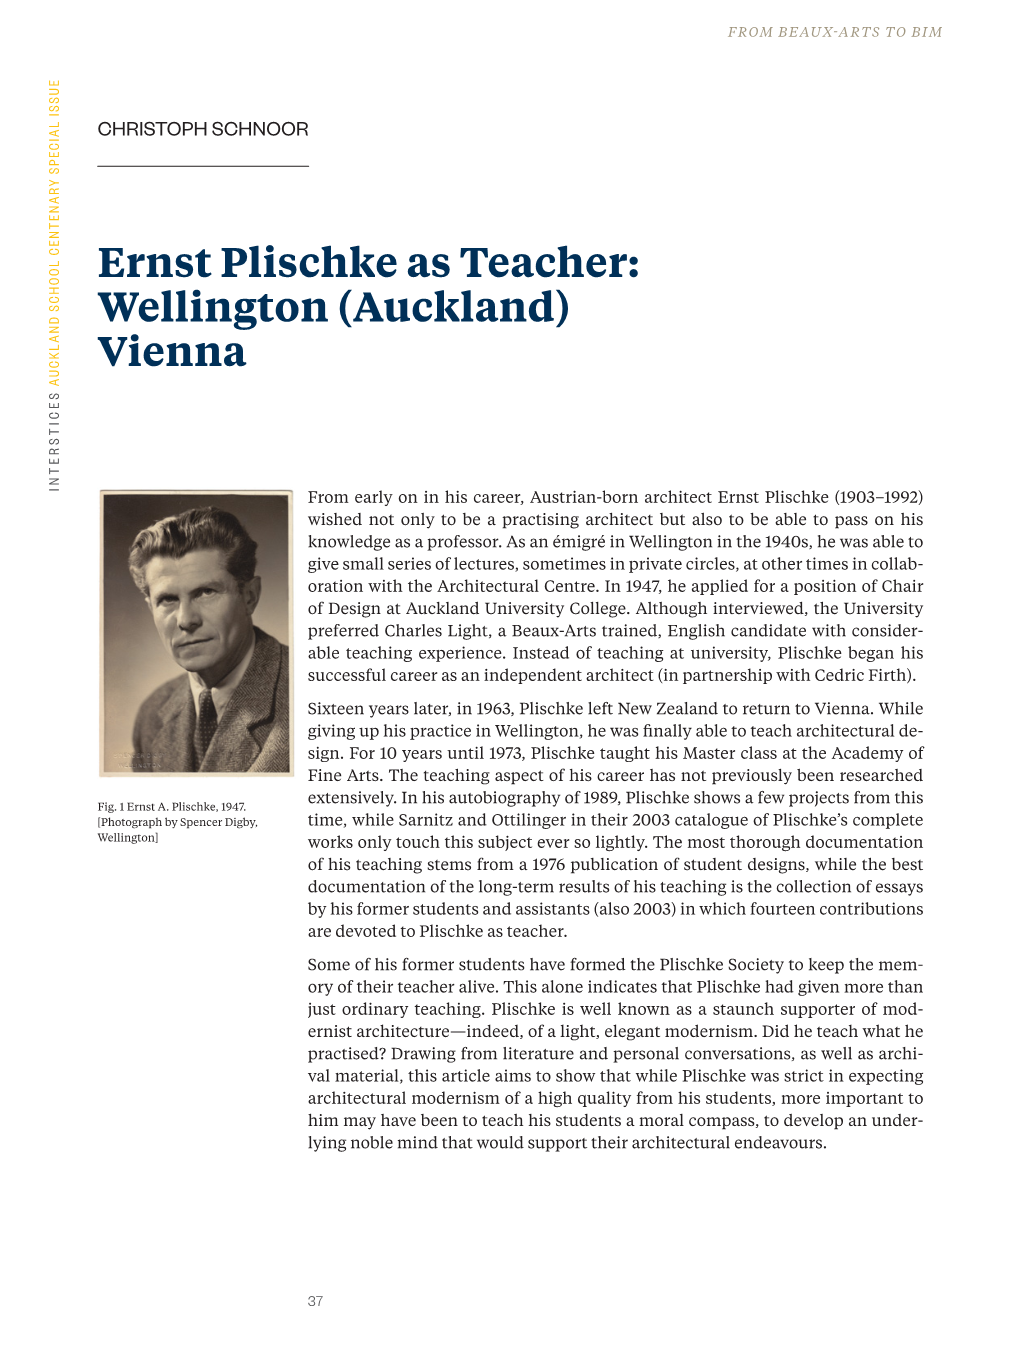 Ernst Plischke As Teacher: Wellington (Auckland) Vienna from BEAUX-ARTS to BIM